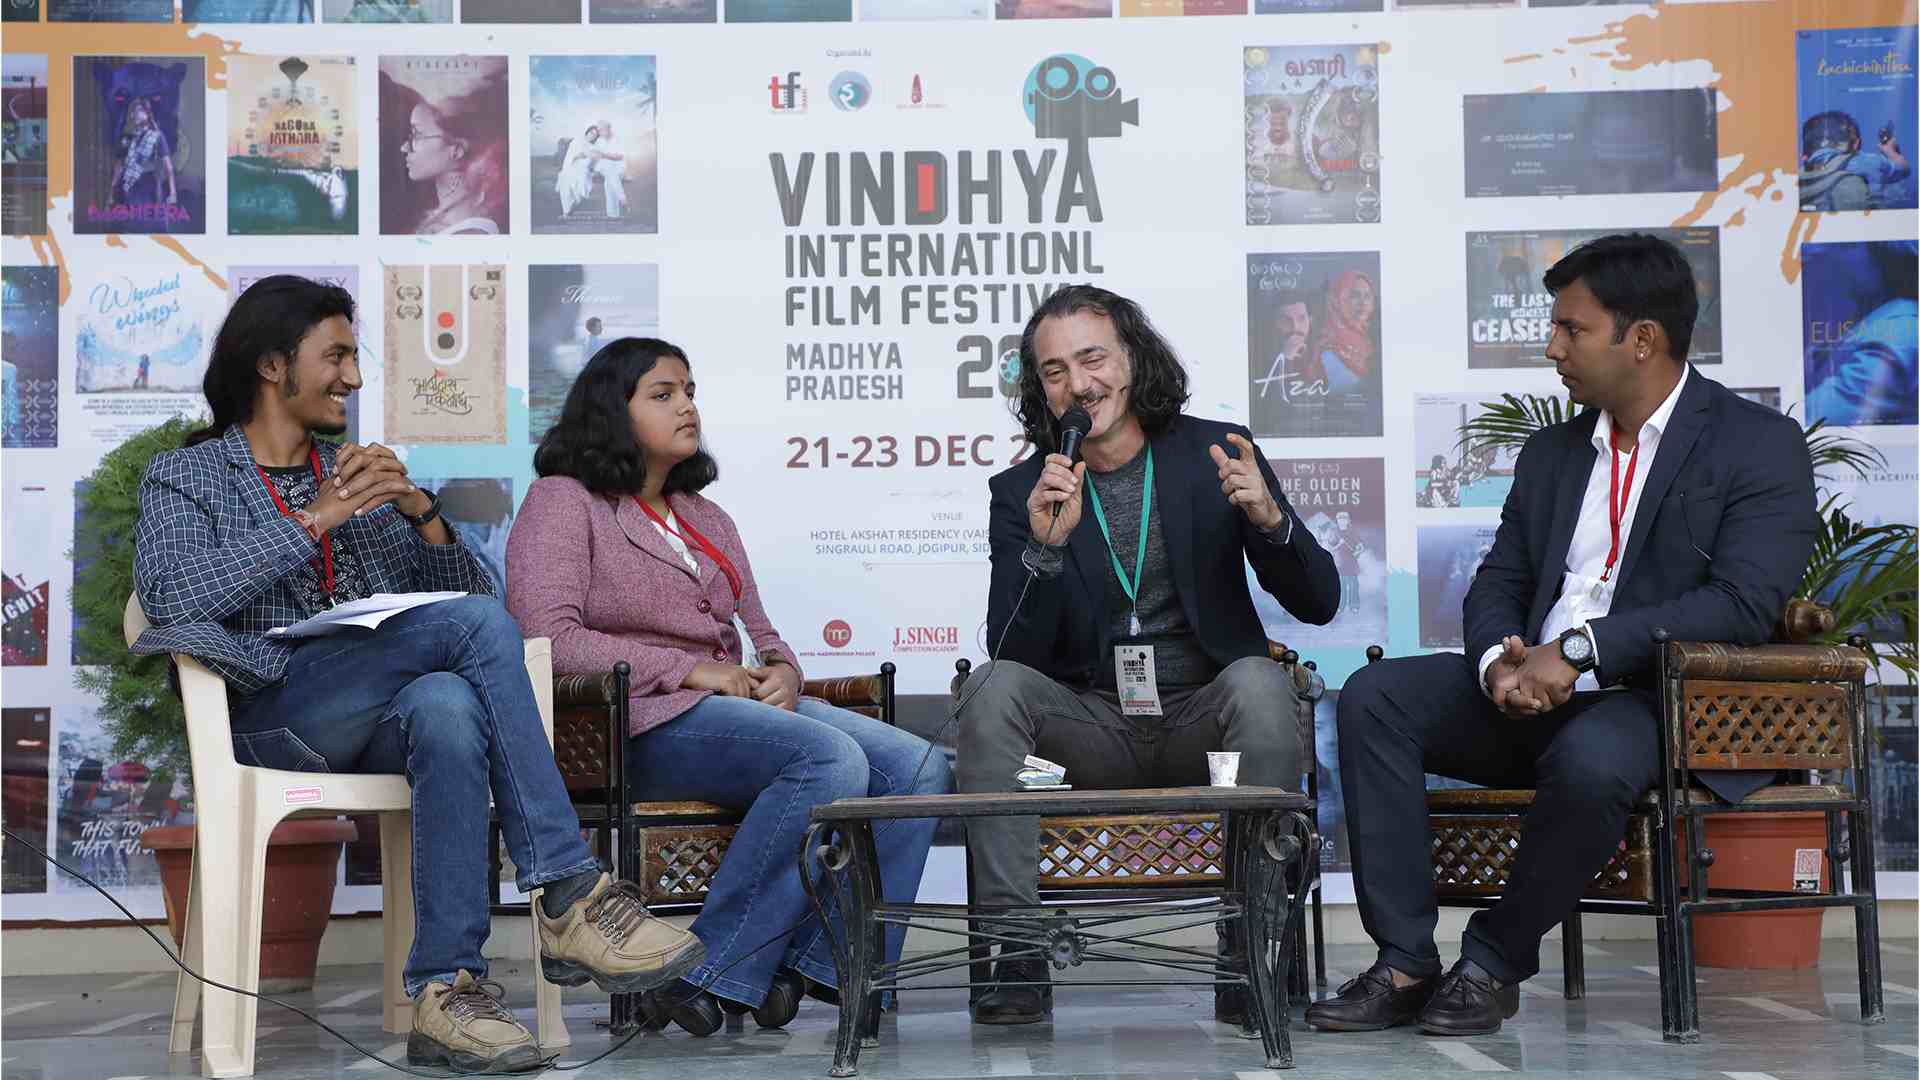 Vindhya International Film Festival Madhya Pradesh